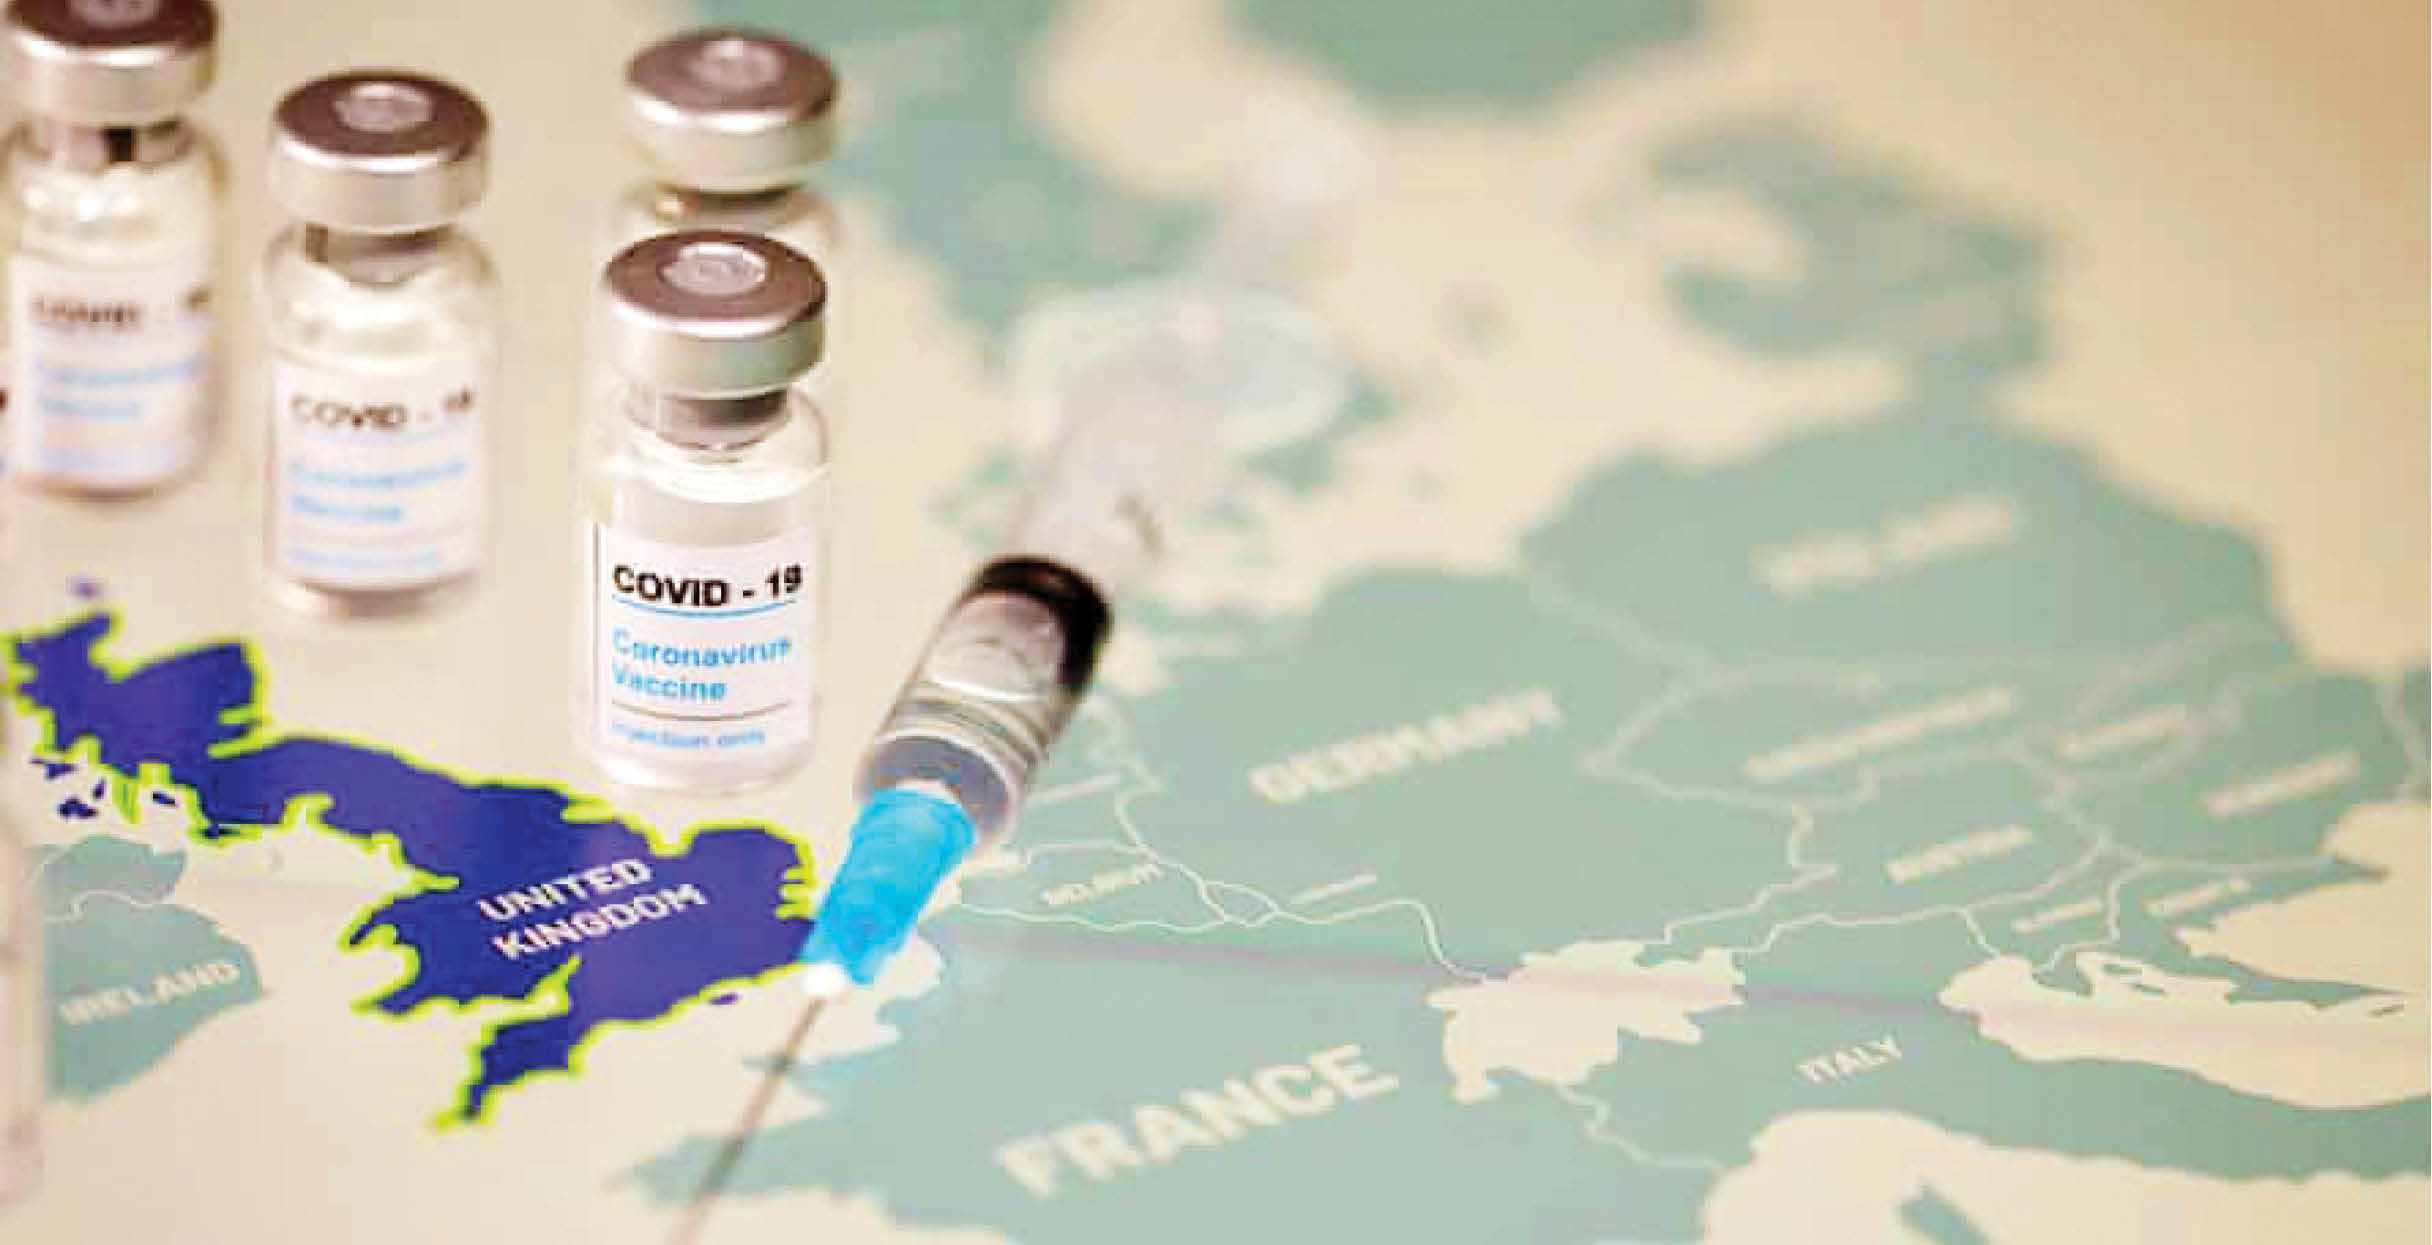 واکسیناسیون کرونا خطرناک است؟